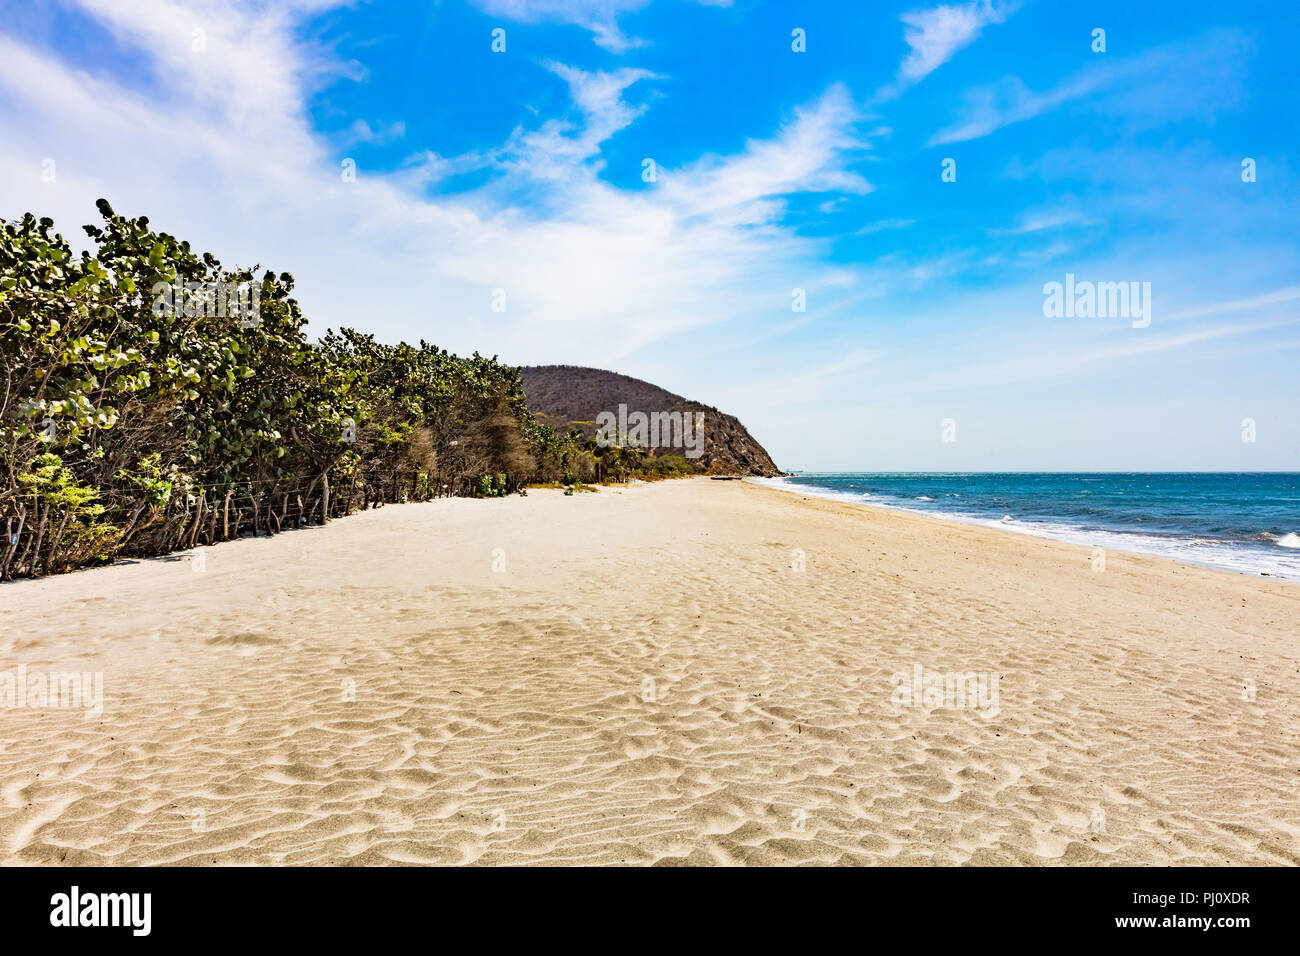 Palomino plage de La Guajira en Colombie Amérique du Sud Banque D'Images